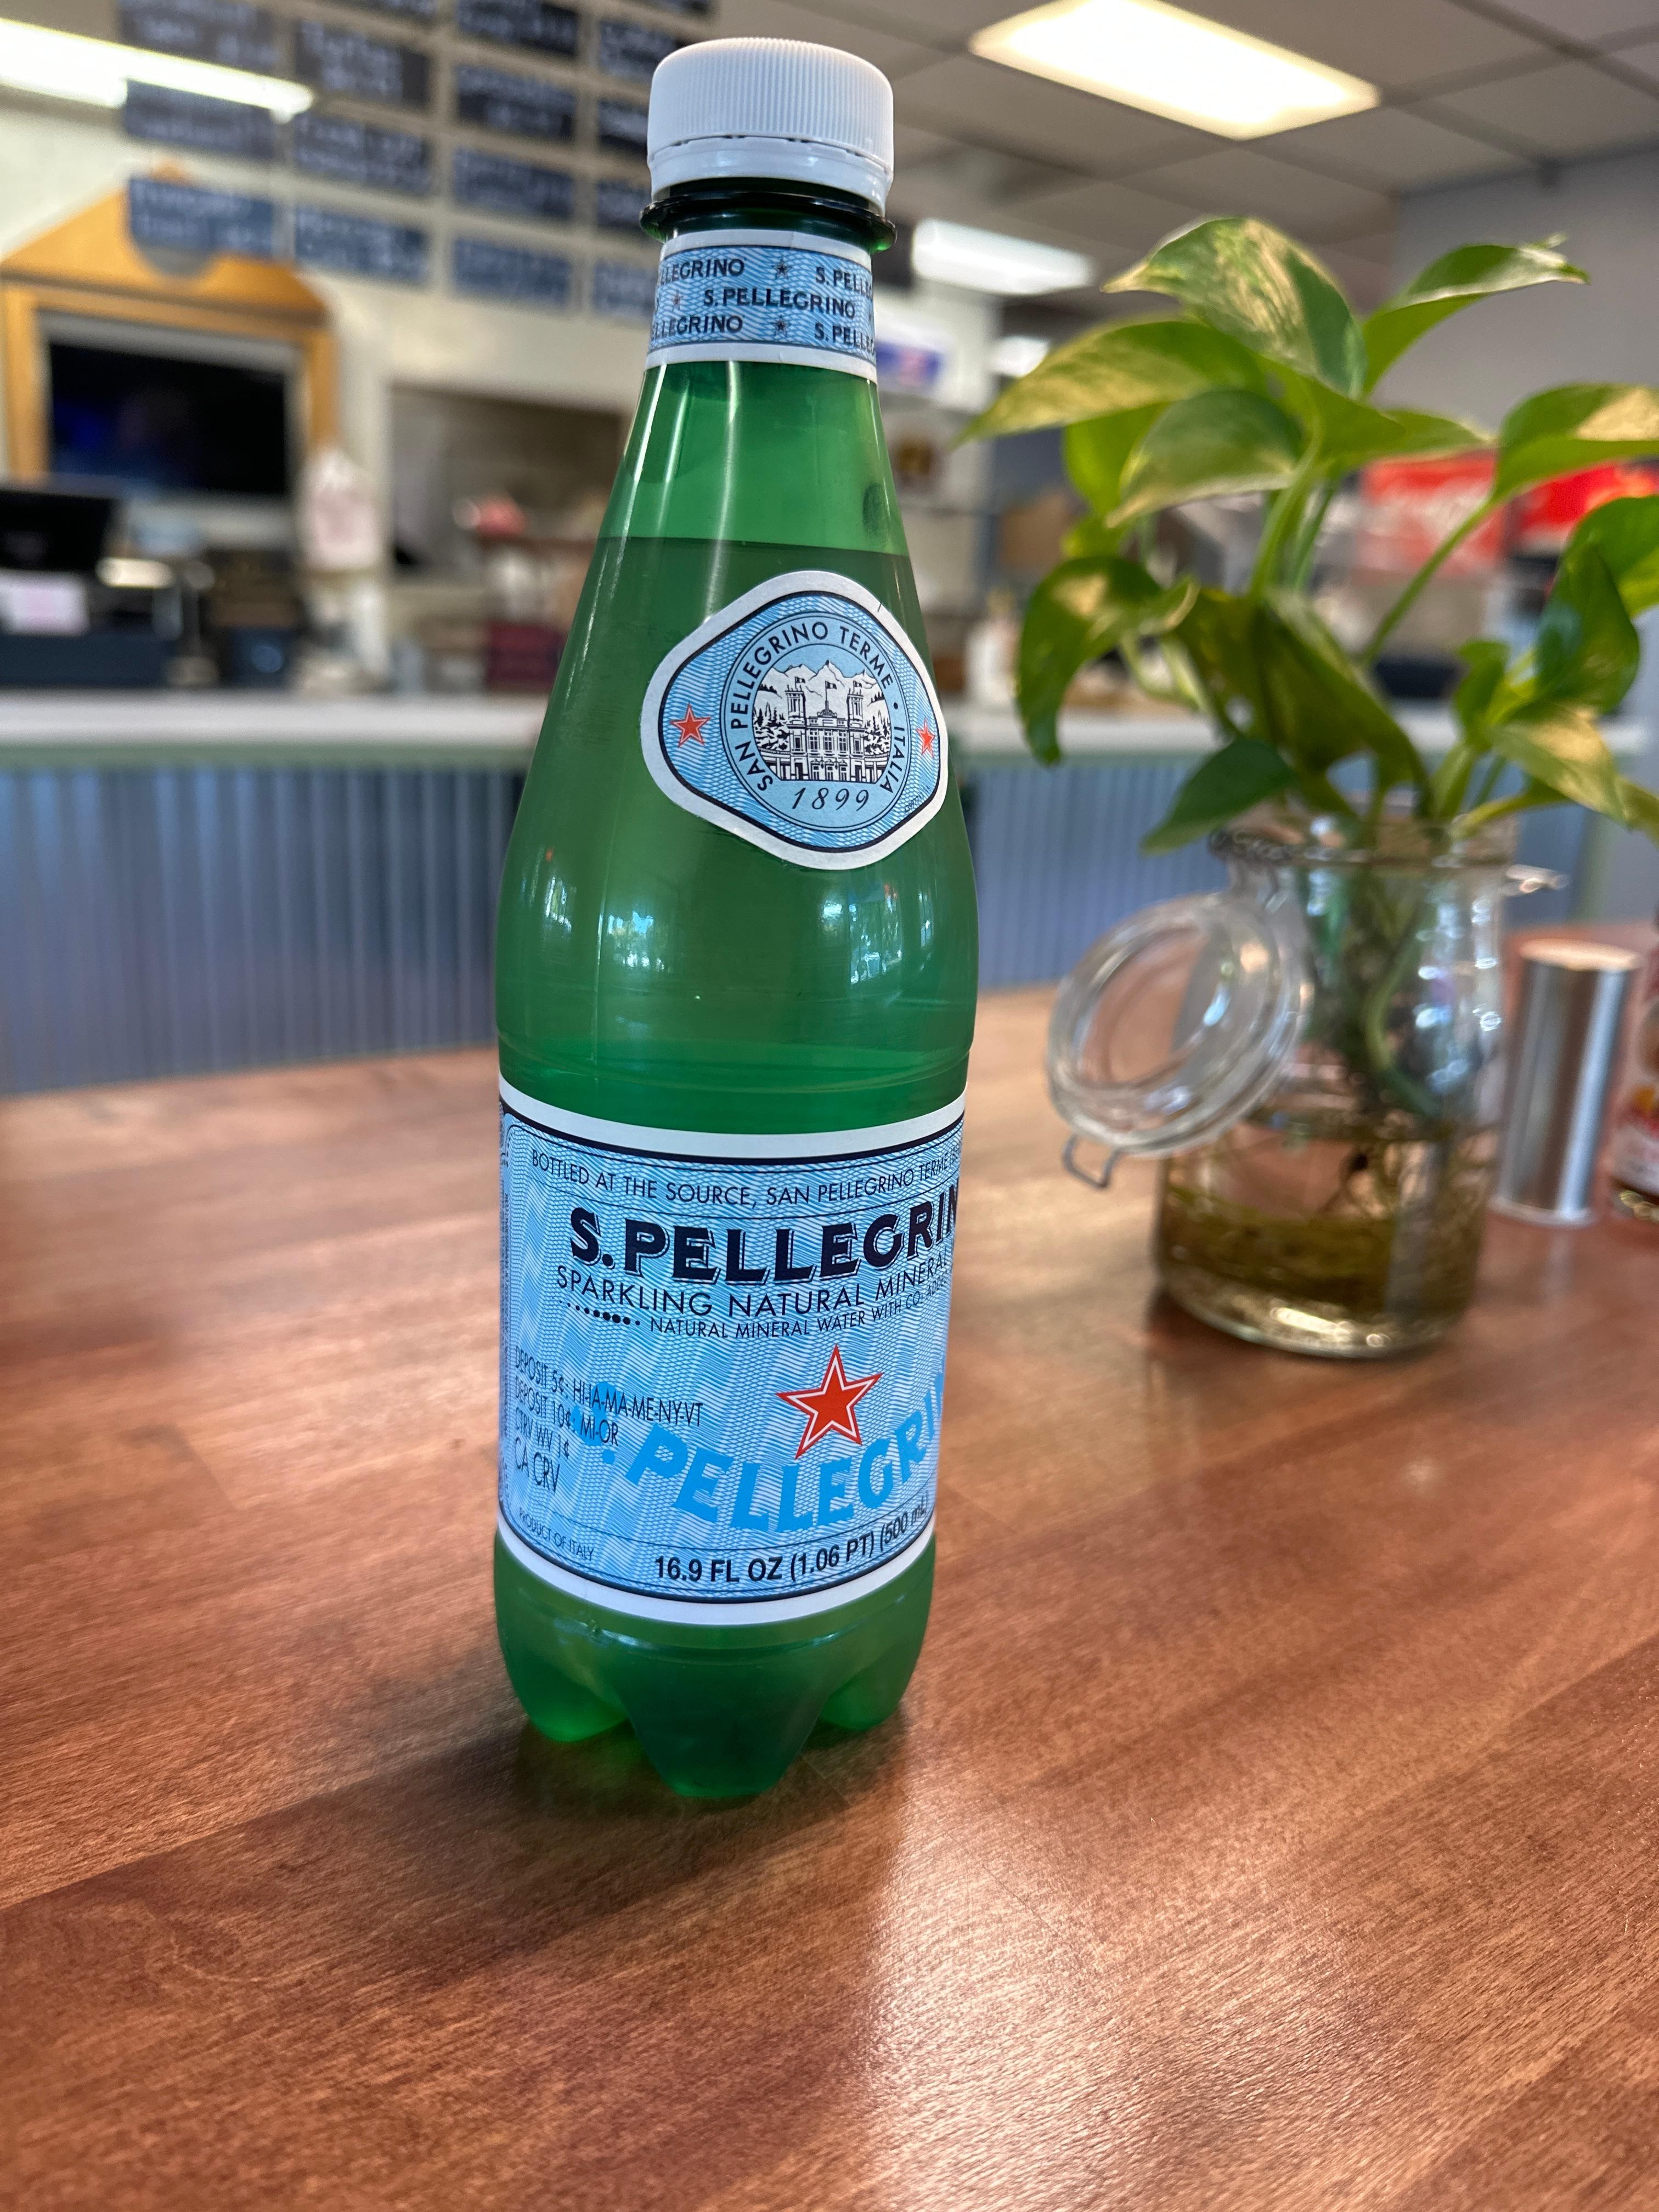 Pellegrino Sparkling Water